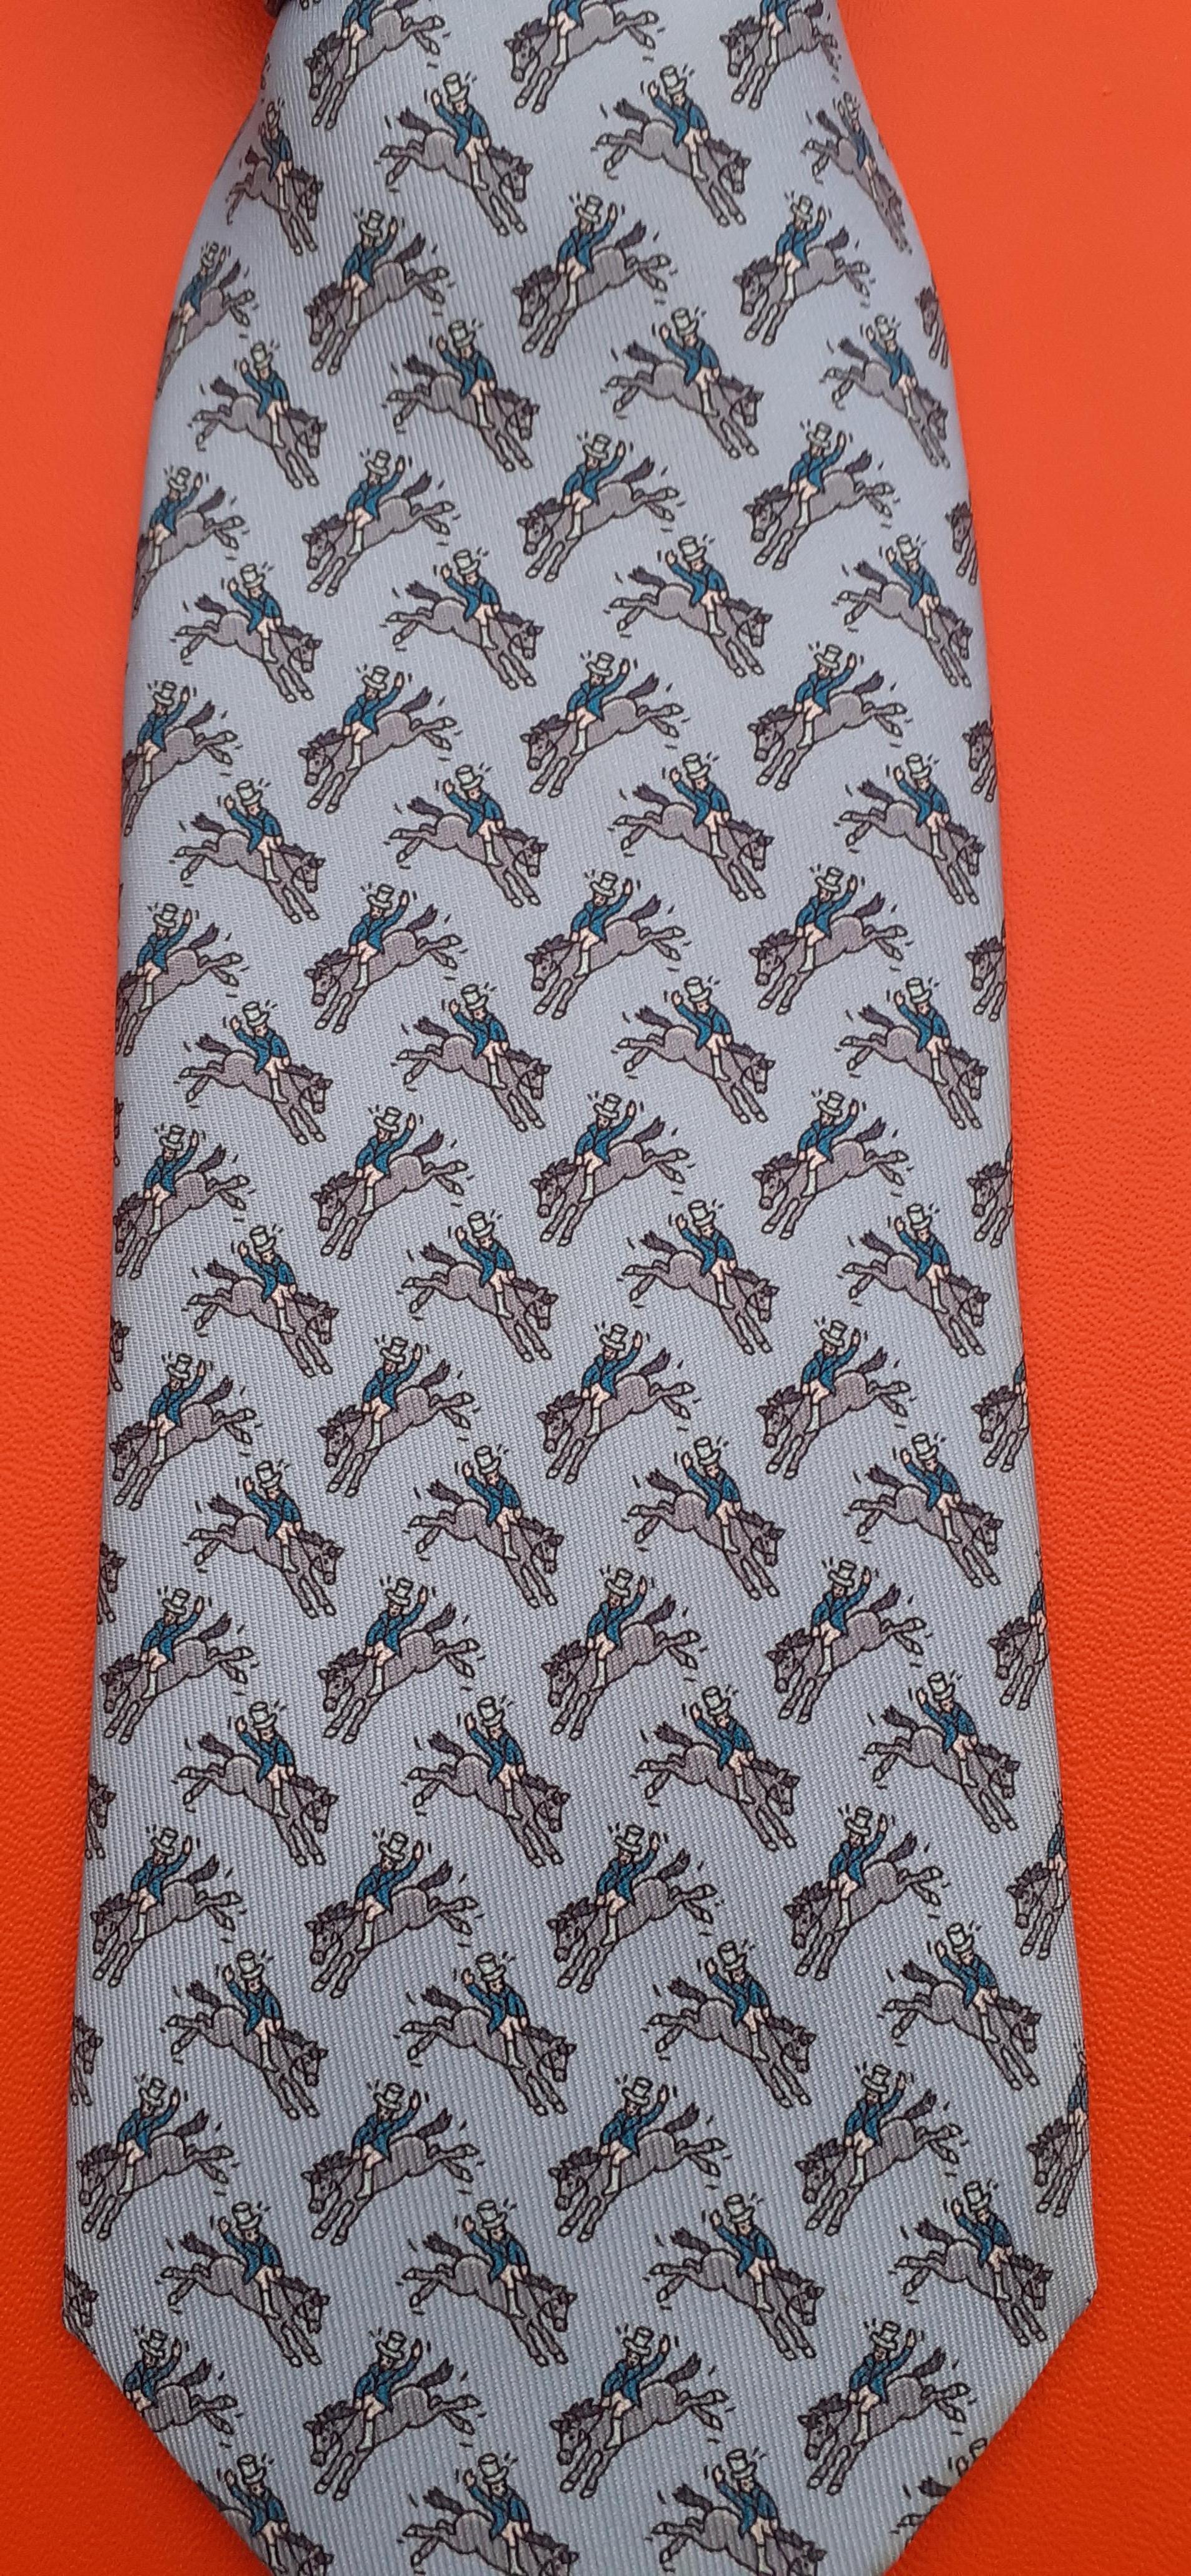 Belle cravate Hermès authentique

Imprimer : Rodéo

Fabriqué en France

Fabriqué en 100% soie

Coloris : nuances de bleu

Doublée de soie bleue unie

